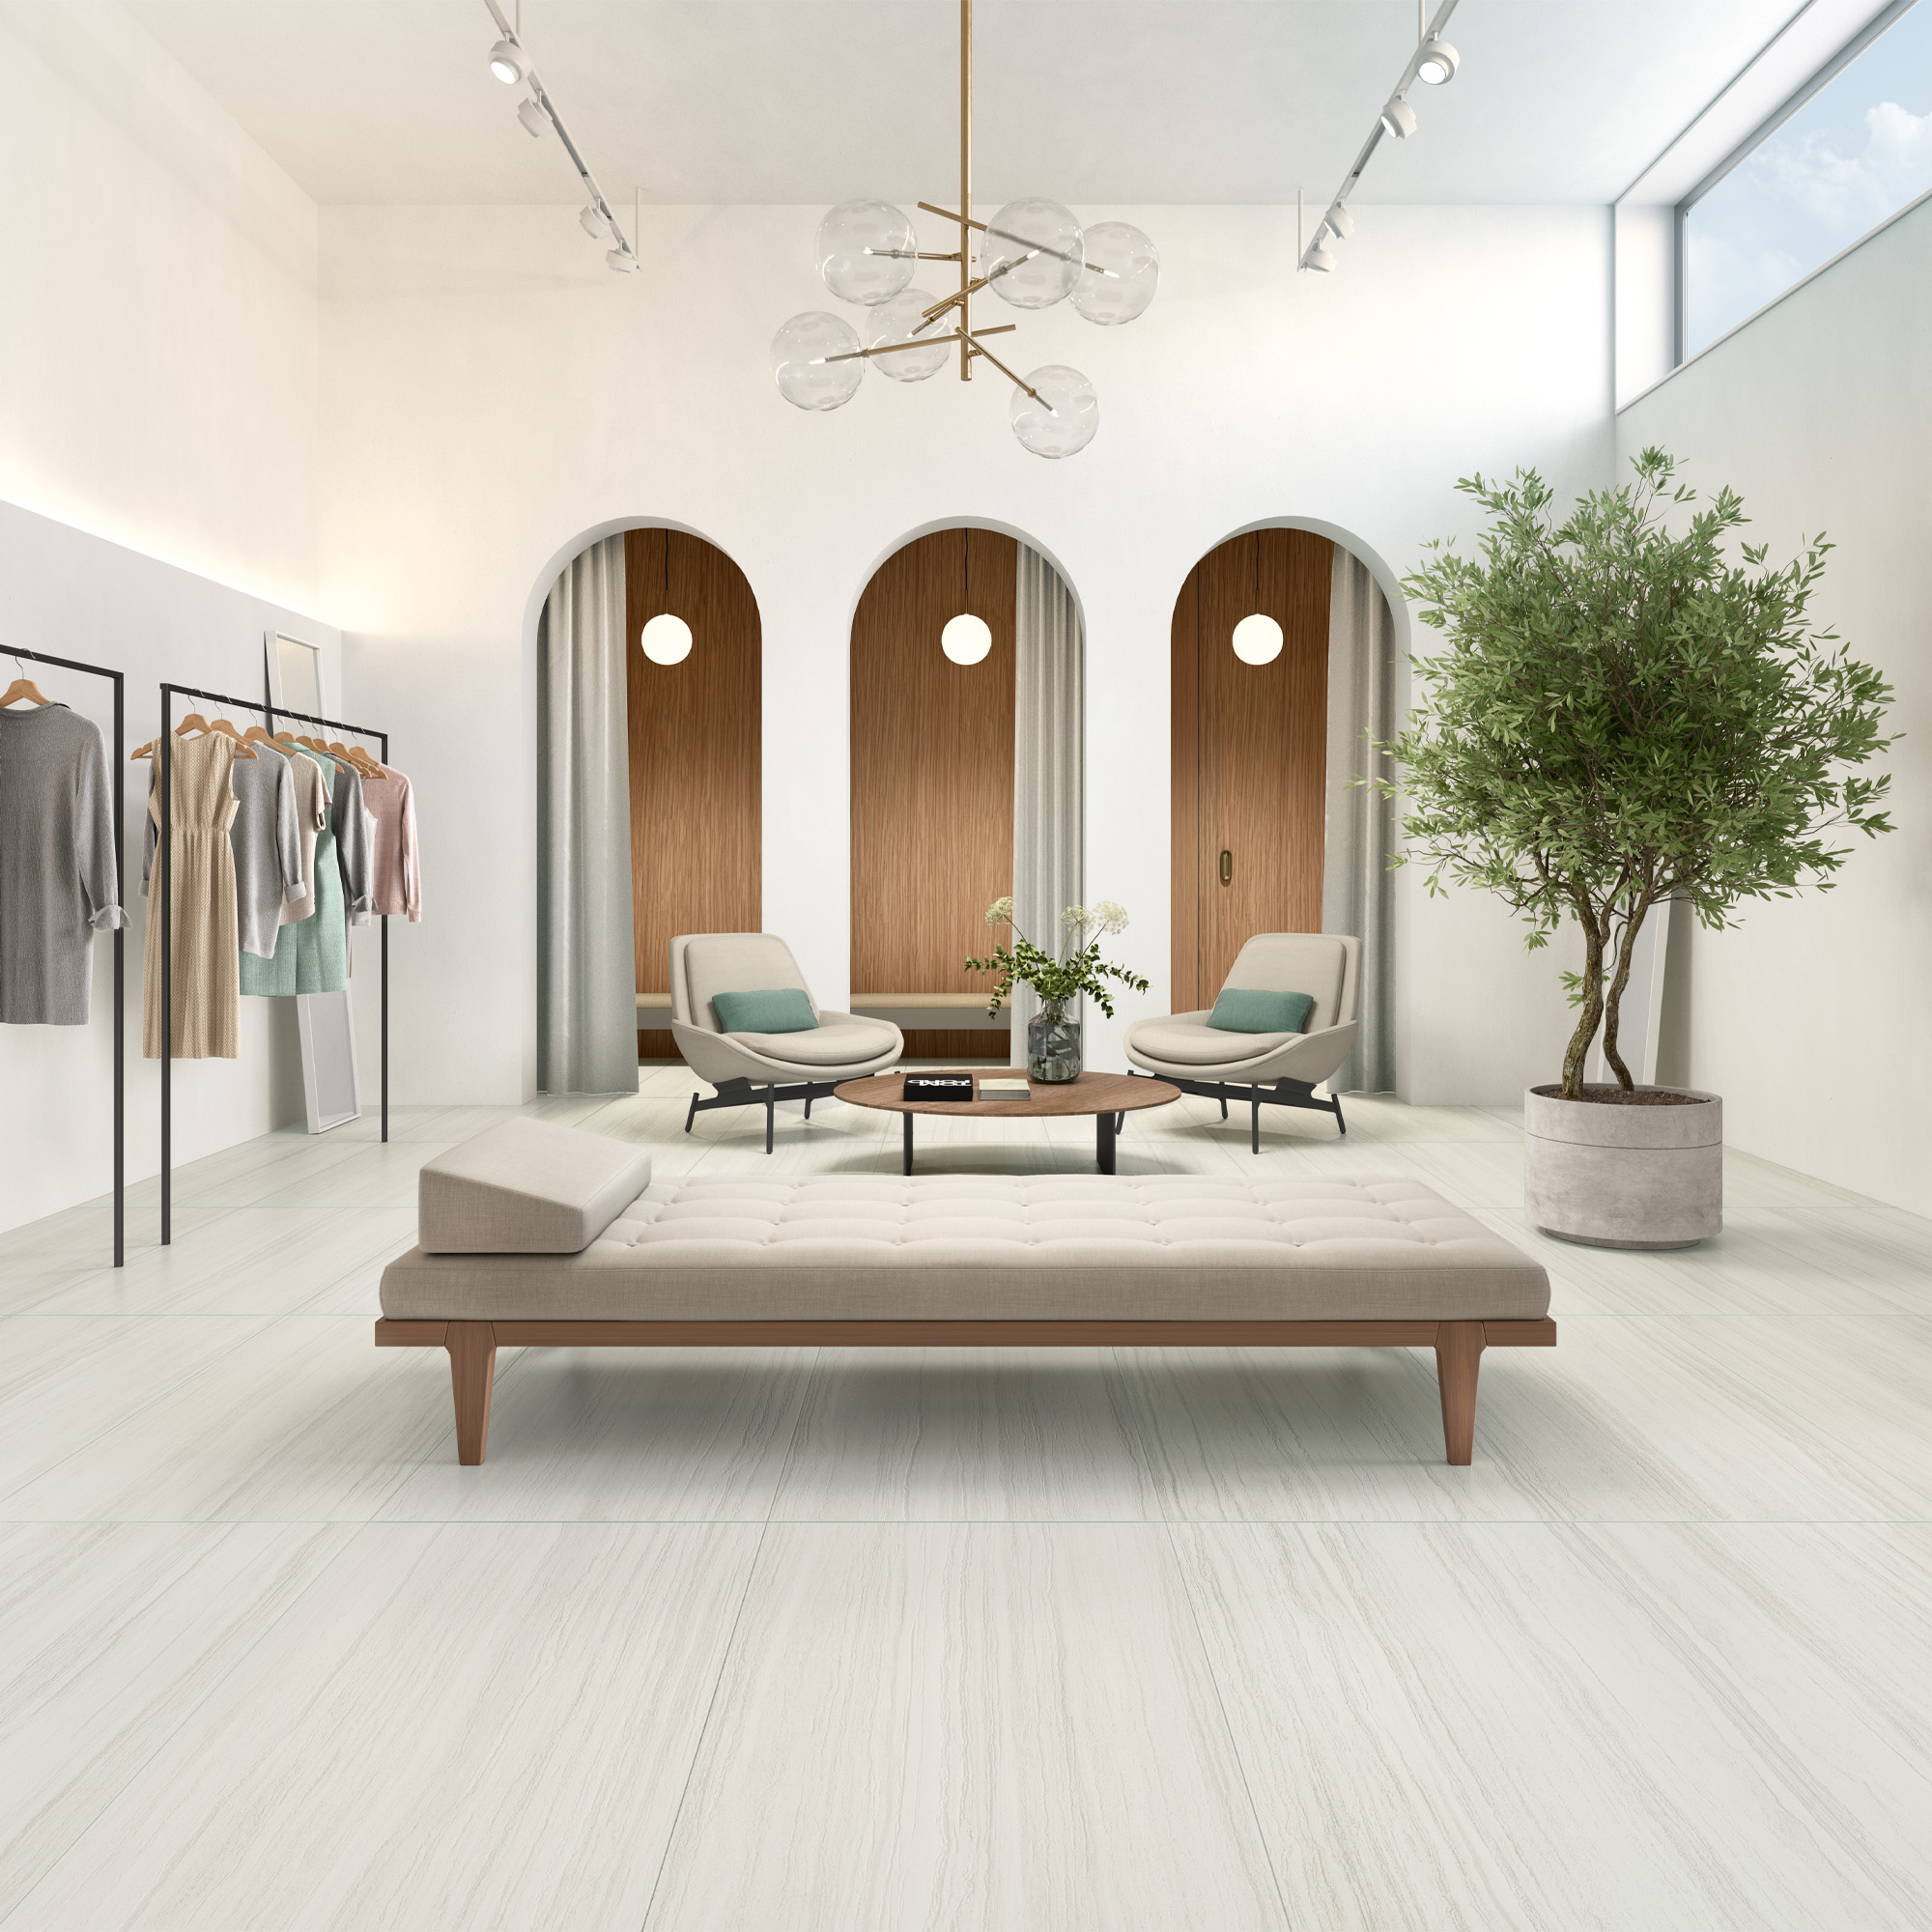 tile-silky-white-mood-decor-inspiration-sammys-designer-flooring